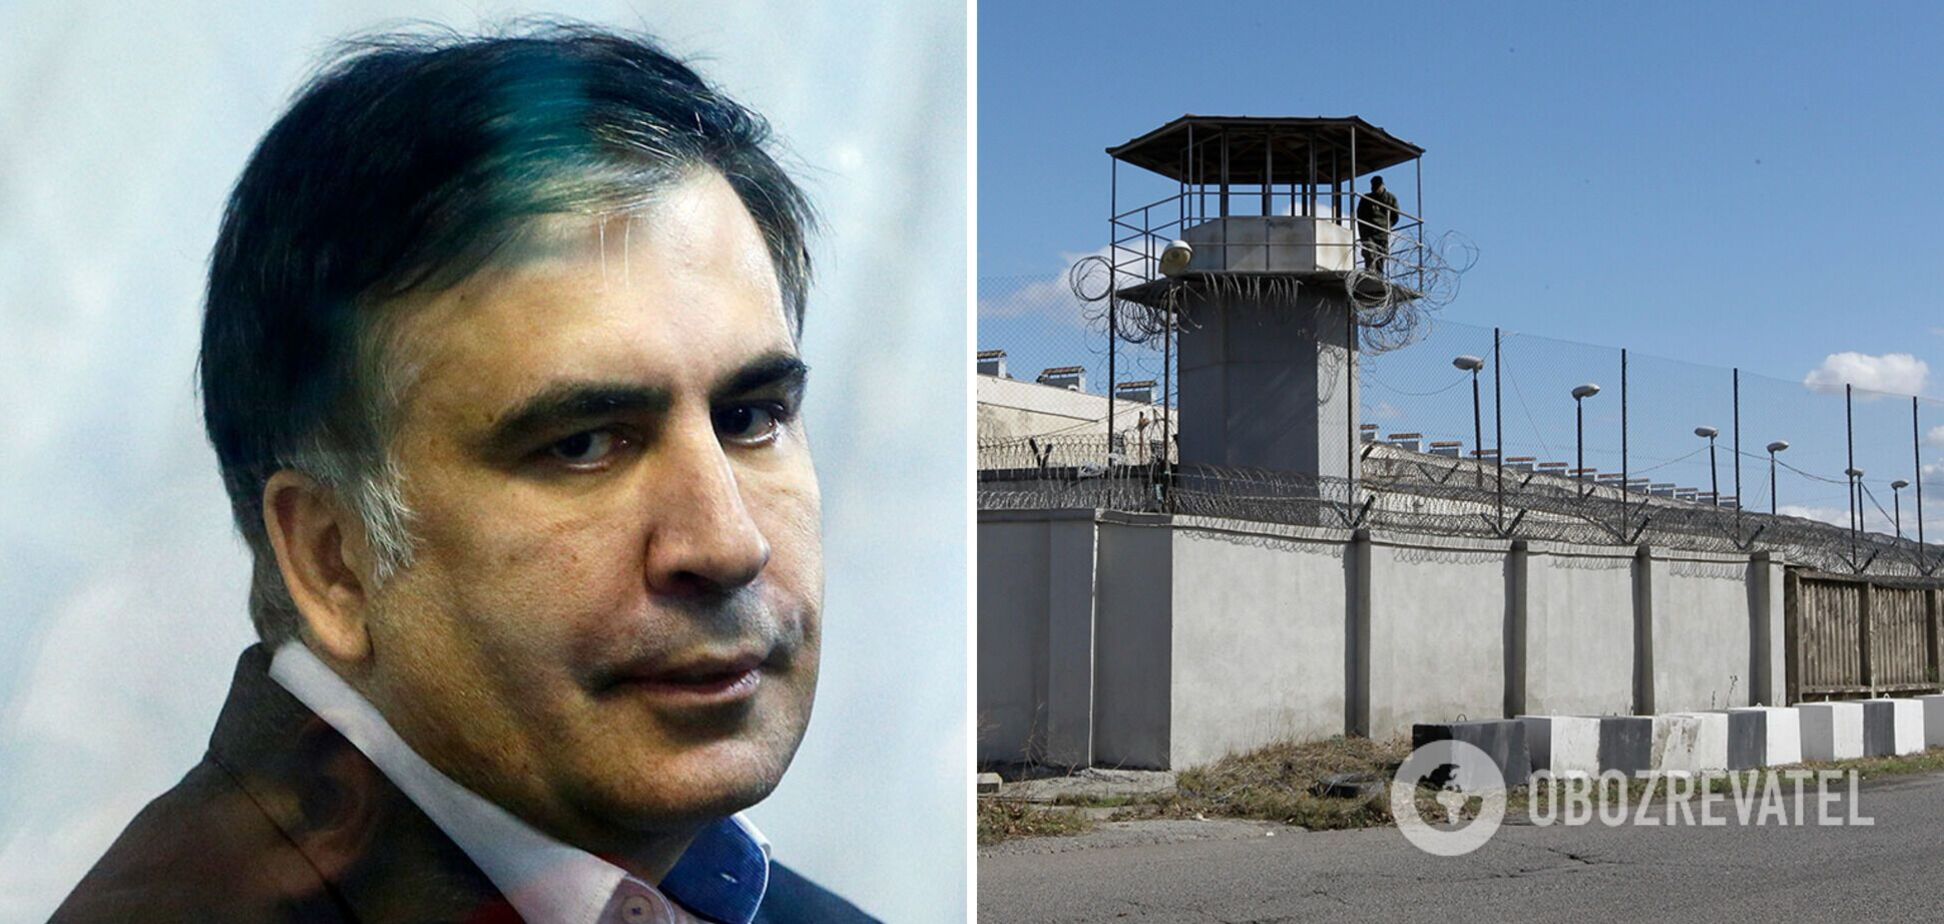  Саакашвили, находясь в тюрьме, подвергался пыткам и нечеловеческому обращению.